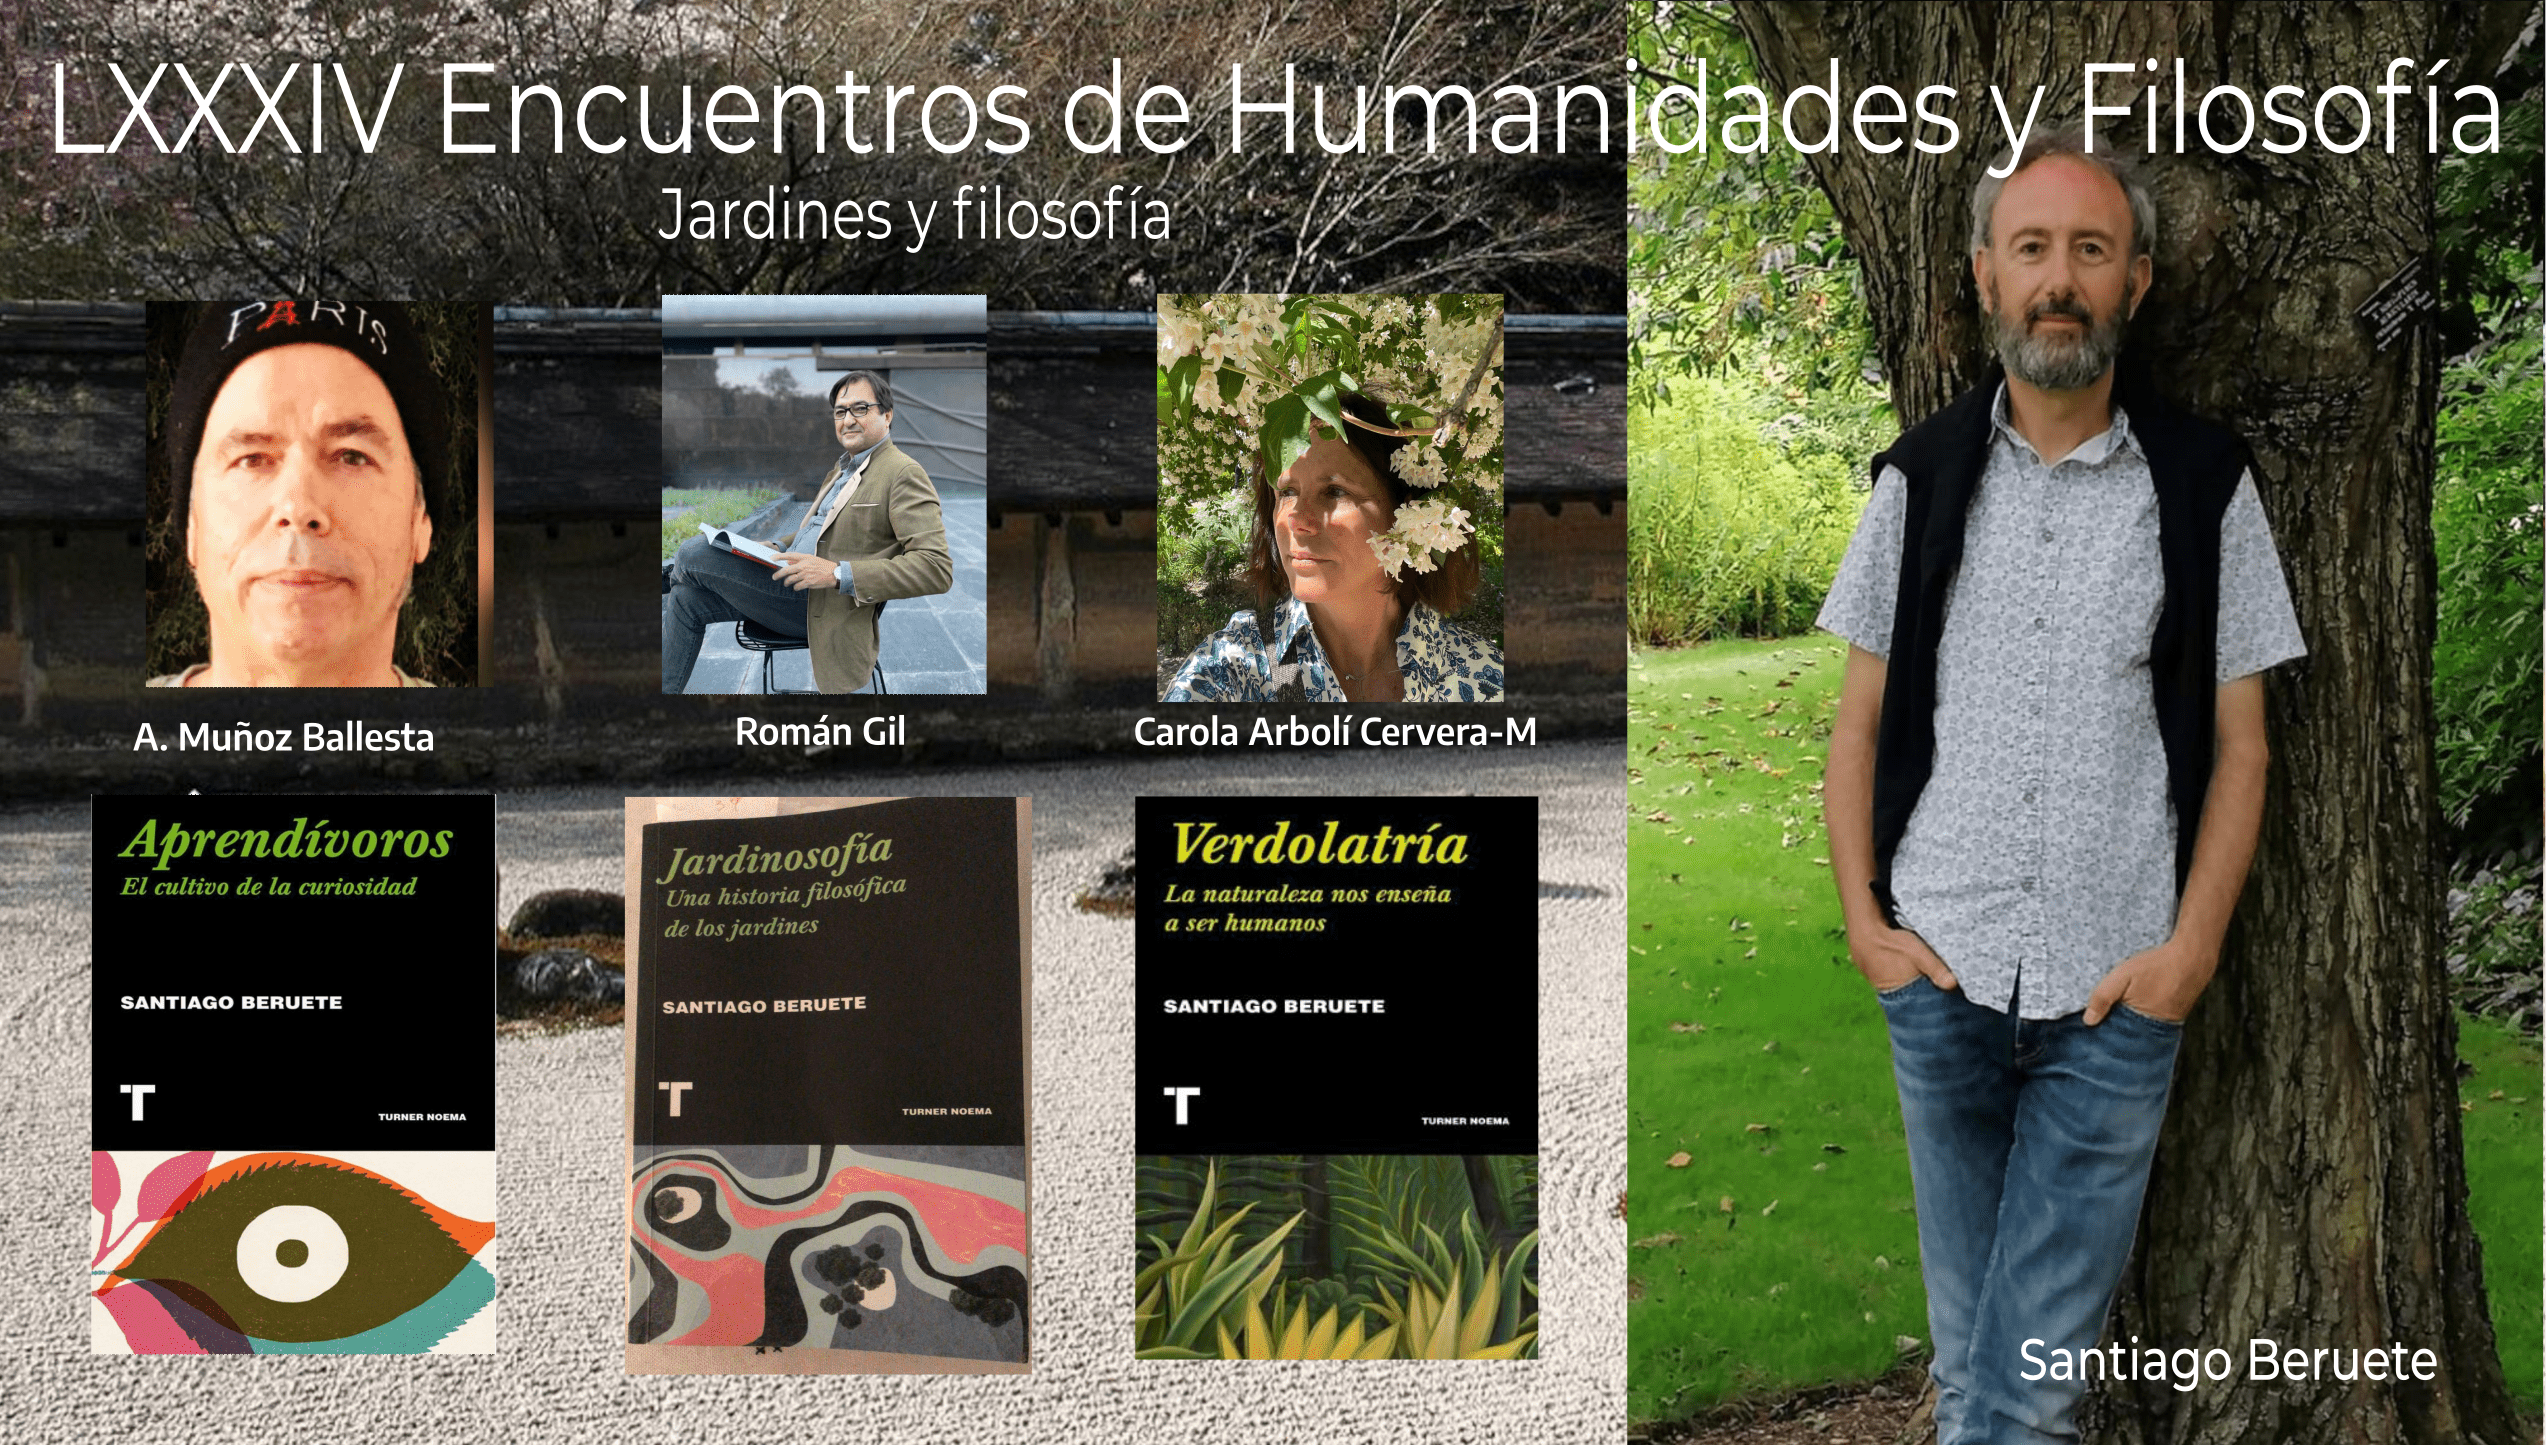 LXXXIV Encuentros de Humanidades y Filosofía, Santiago Beruete sobre jardines y filosofía.